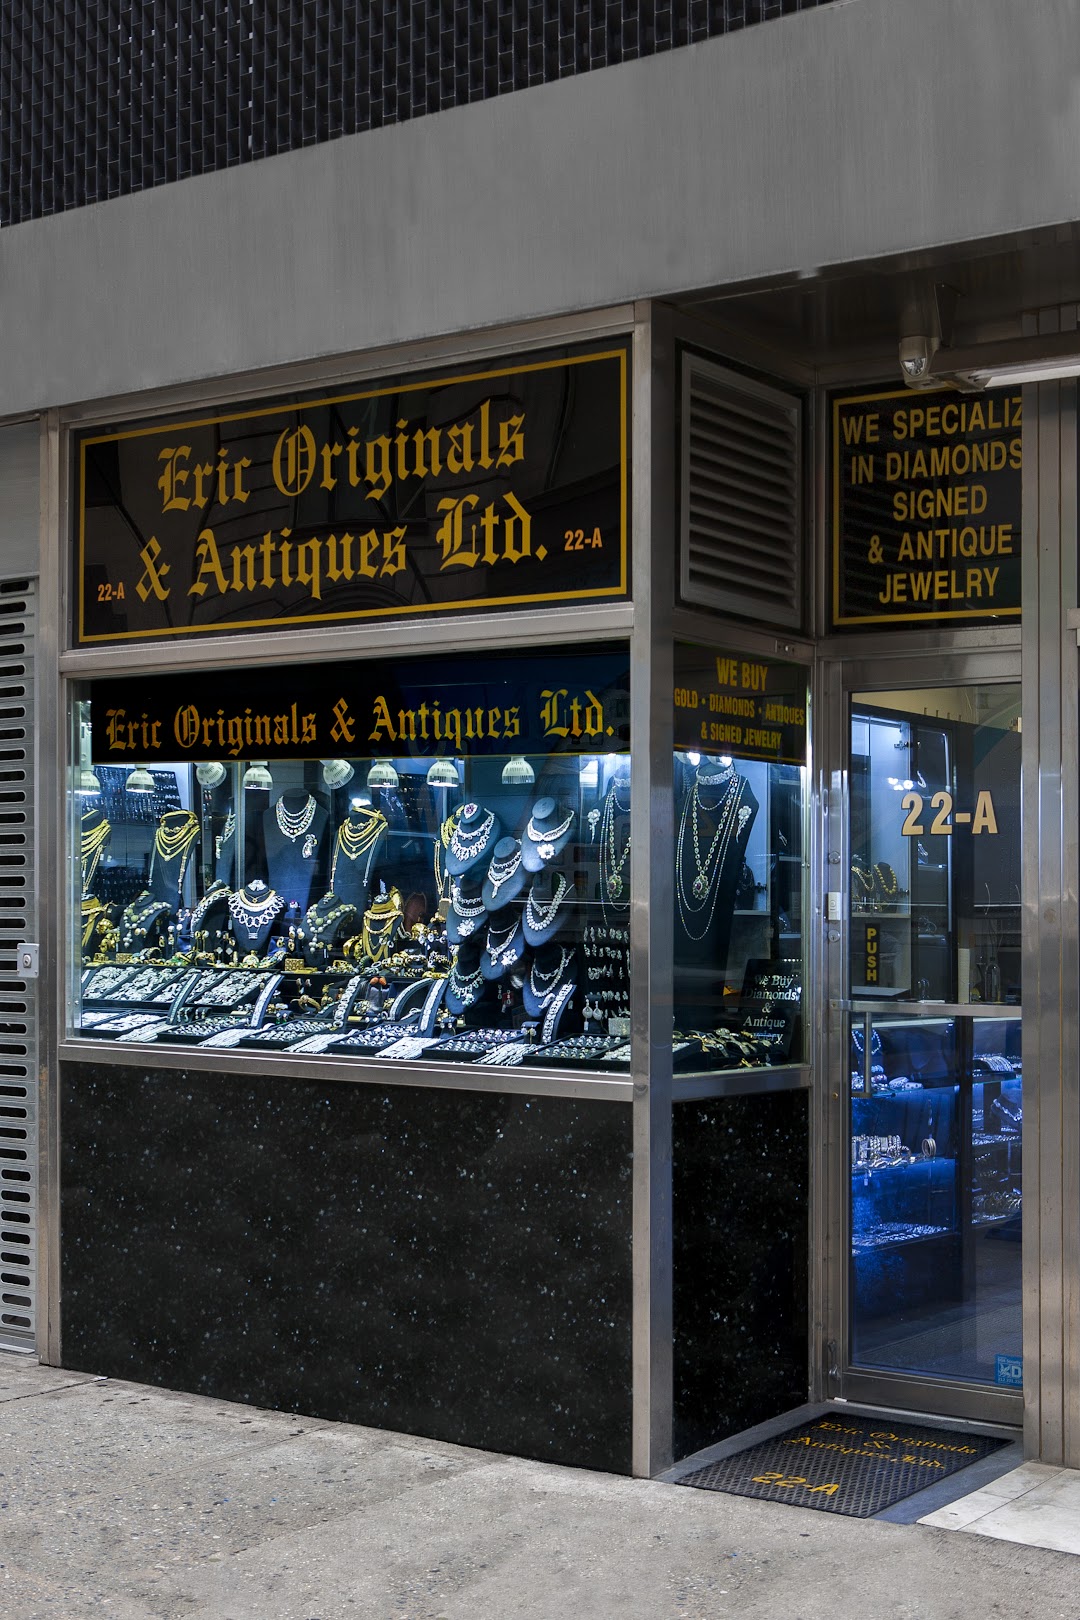 Eric Originals and Antiques Ltd.